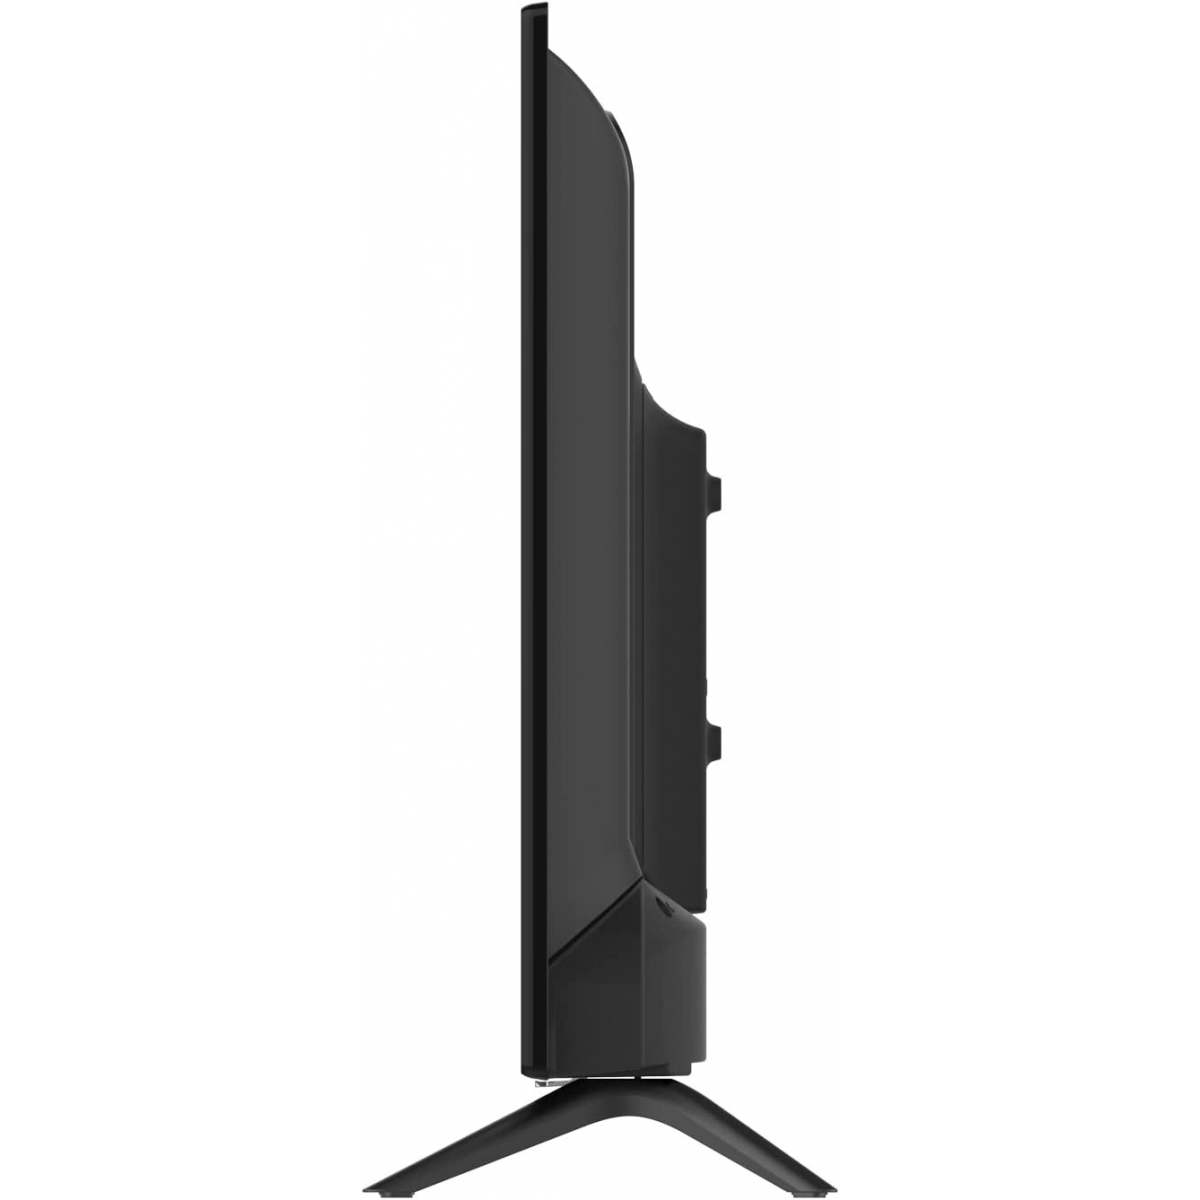 Grunkel - Televisor 43 Pulgadas Smart TV. LED-4322GOO con Chromecast Modelo  año 2022. con Pantalla 4K Ultra HD, Wi-Fi y Smart TV. Bajo Consumo y